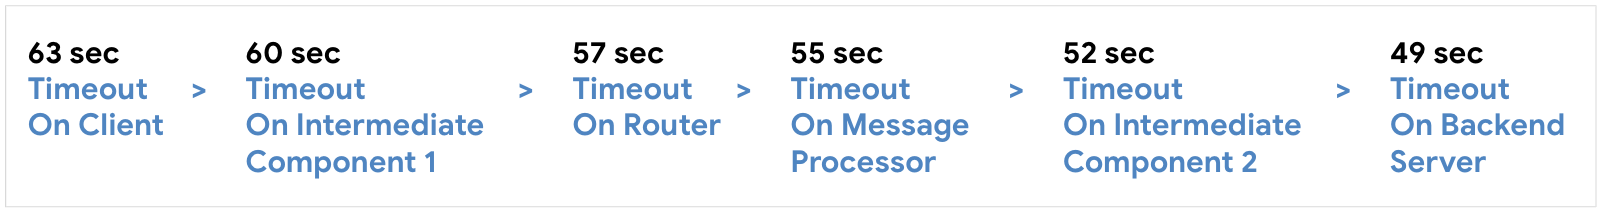 กำหนดค่าการหมดเวลาสำหรับไคลเอ็นต์ที่ 63 วินาที แล้ว Intermediate Component 1 ที่ 60 วินาที , เราเตอร์ที่เวลา 57 วินาที , Message Processor st 55 วินาที จากนั้น ตามด้วย Intermediate Component 2 ที่ 52 วินาที จากนั้นที่เหลือ Backend Server ที่ 59 วินาที